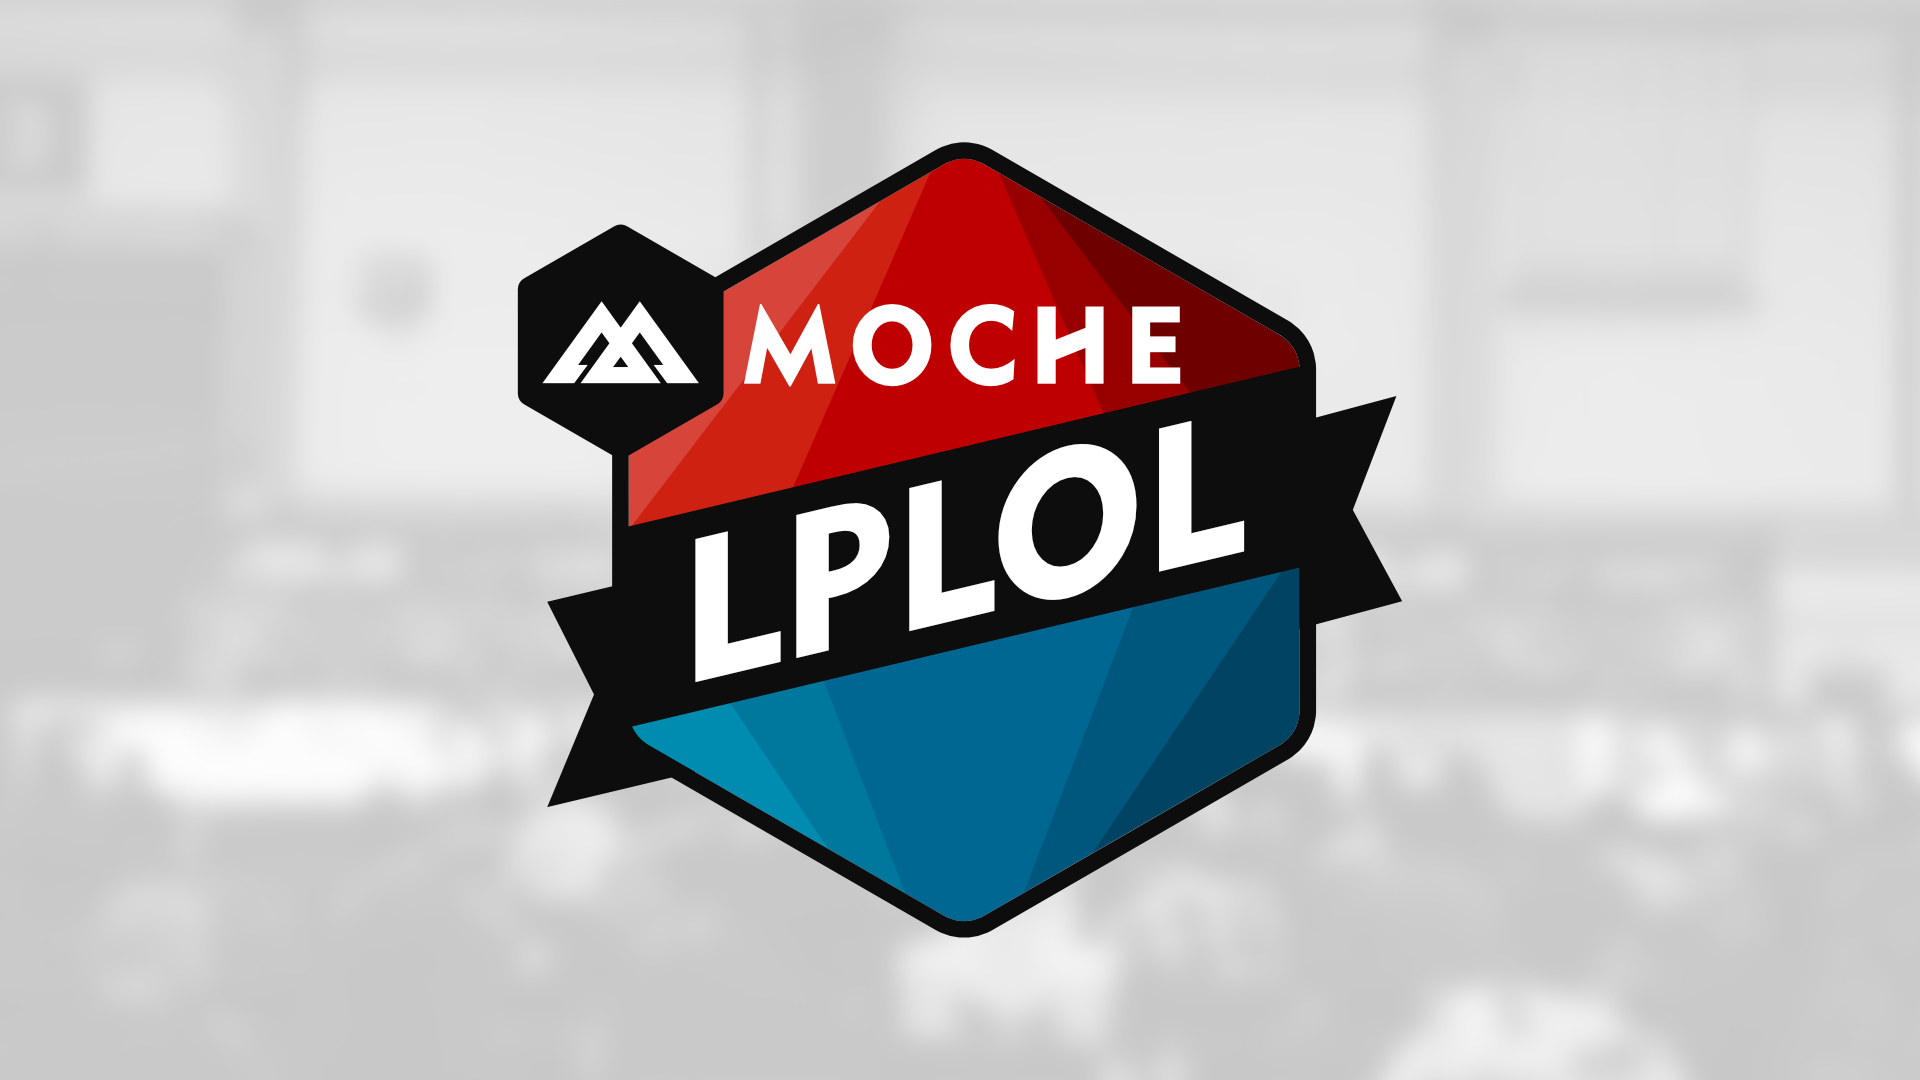 Apresentação Oficial Moche LPLOL 2017